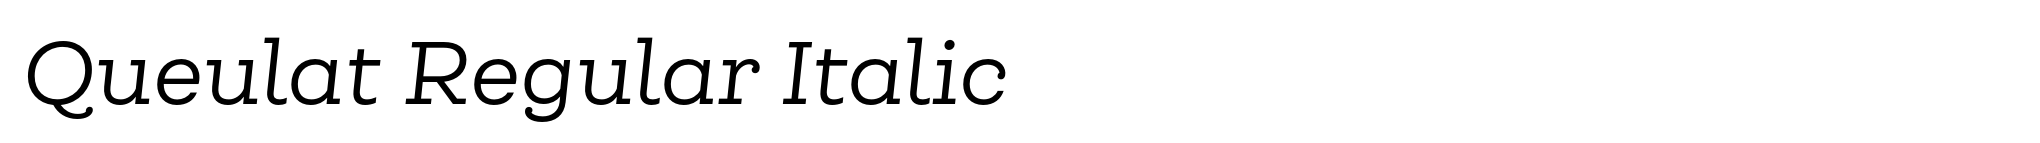 Queulat Regular Italic image